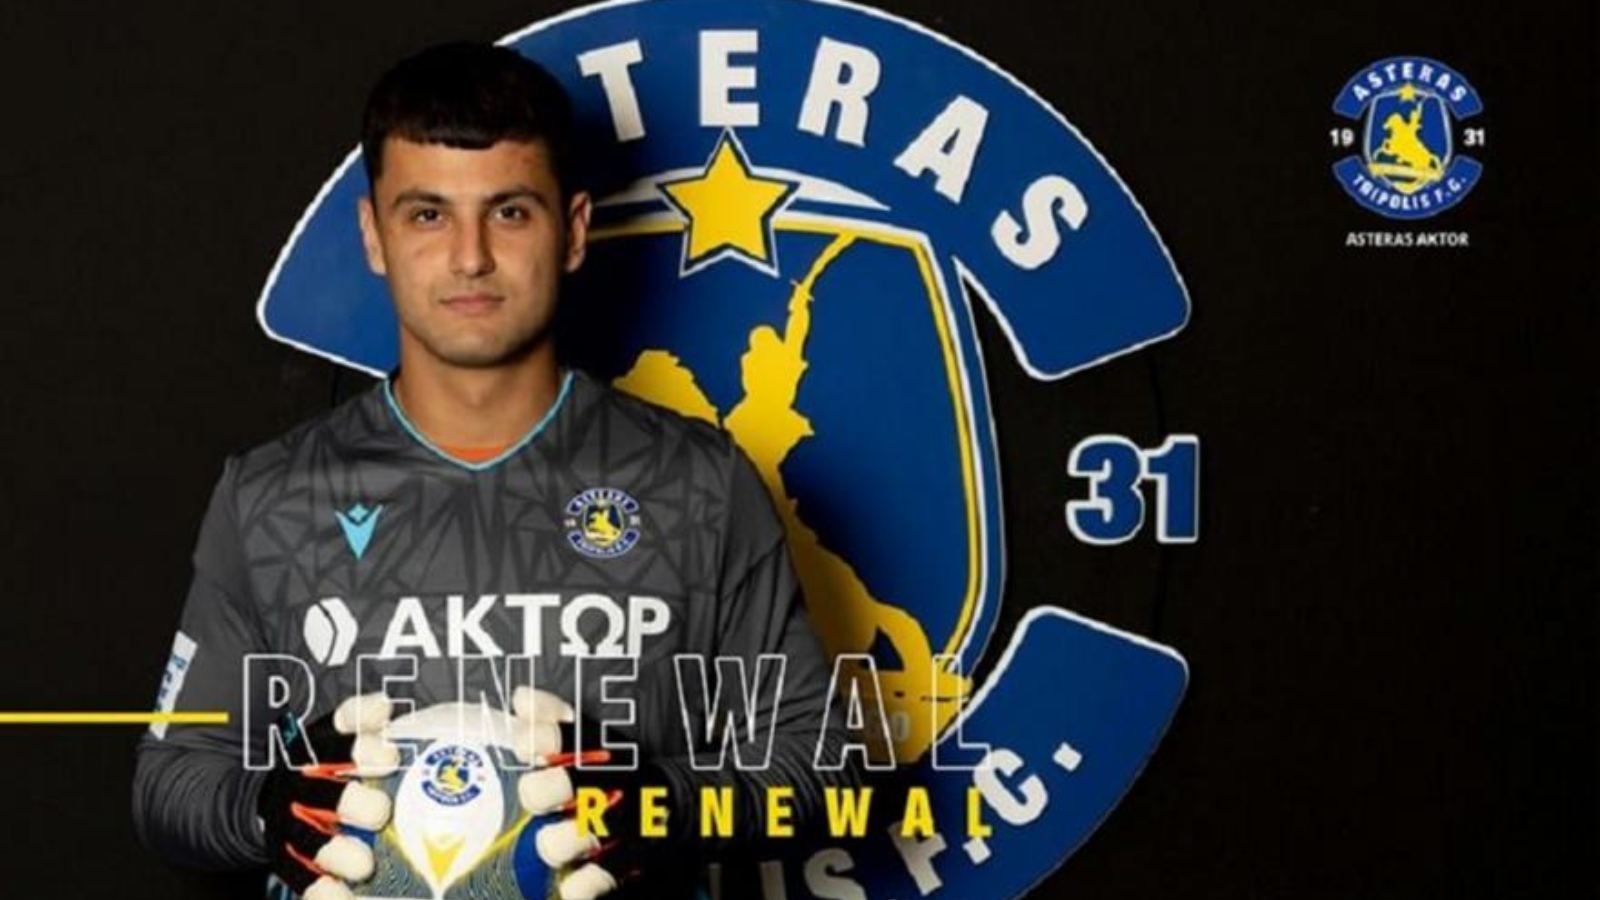 Ο Asteras AKTOR έδεσε με νέο συμβόλαιο τον 17χρονο ταλαντούχο τερματοφύλακα